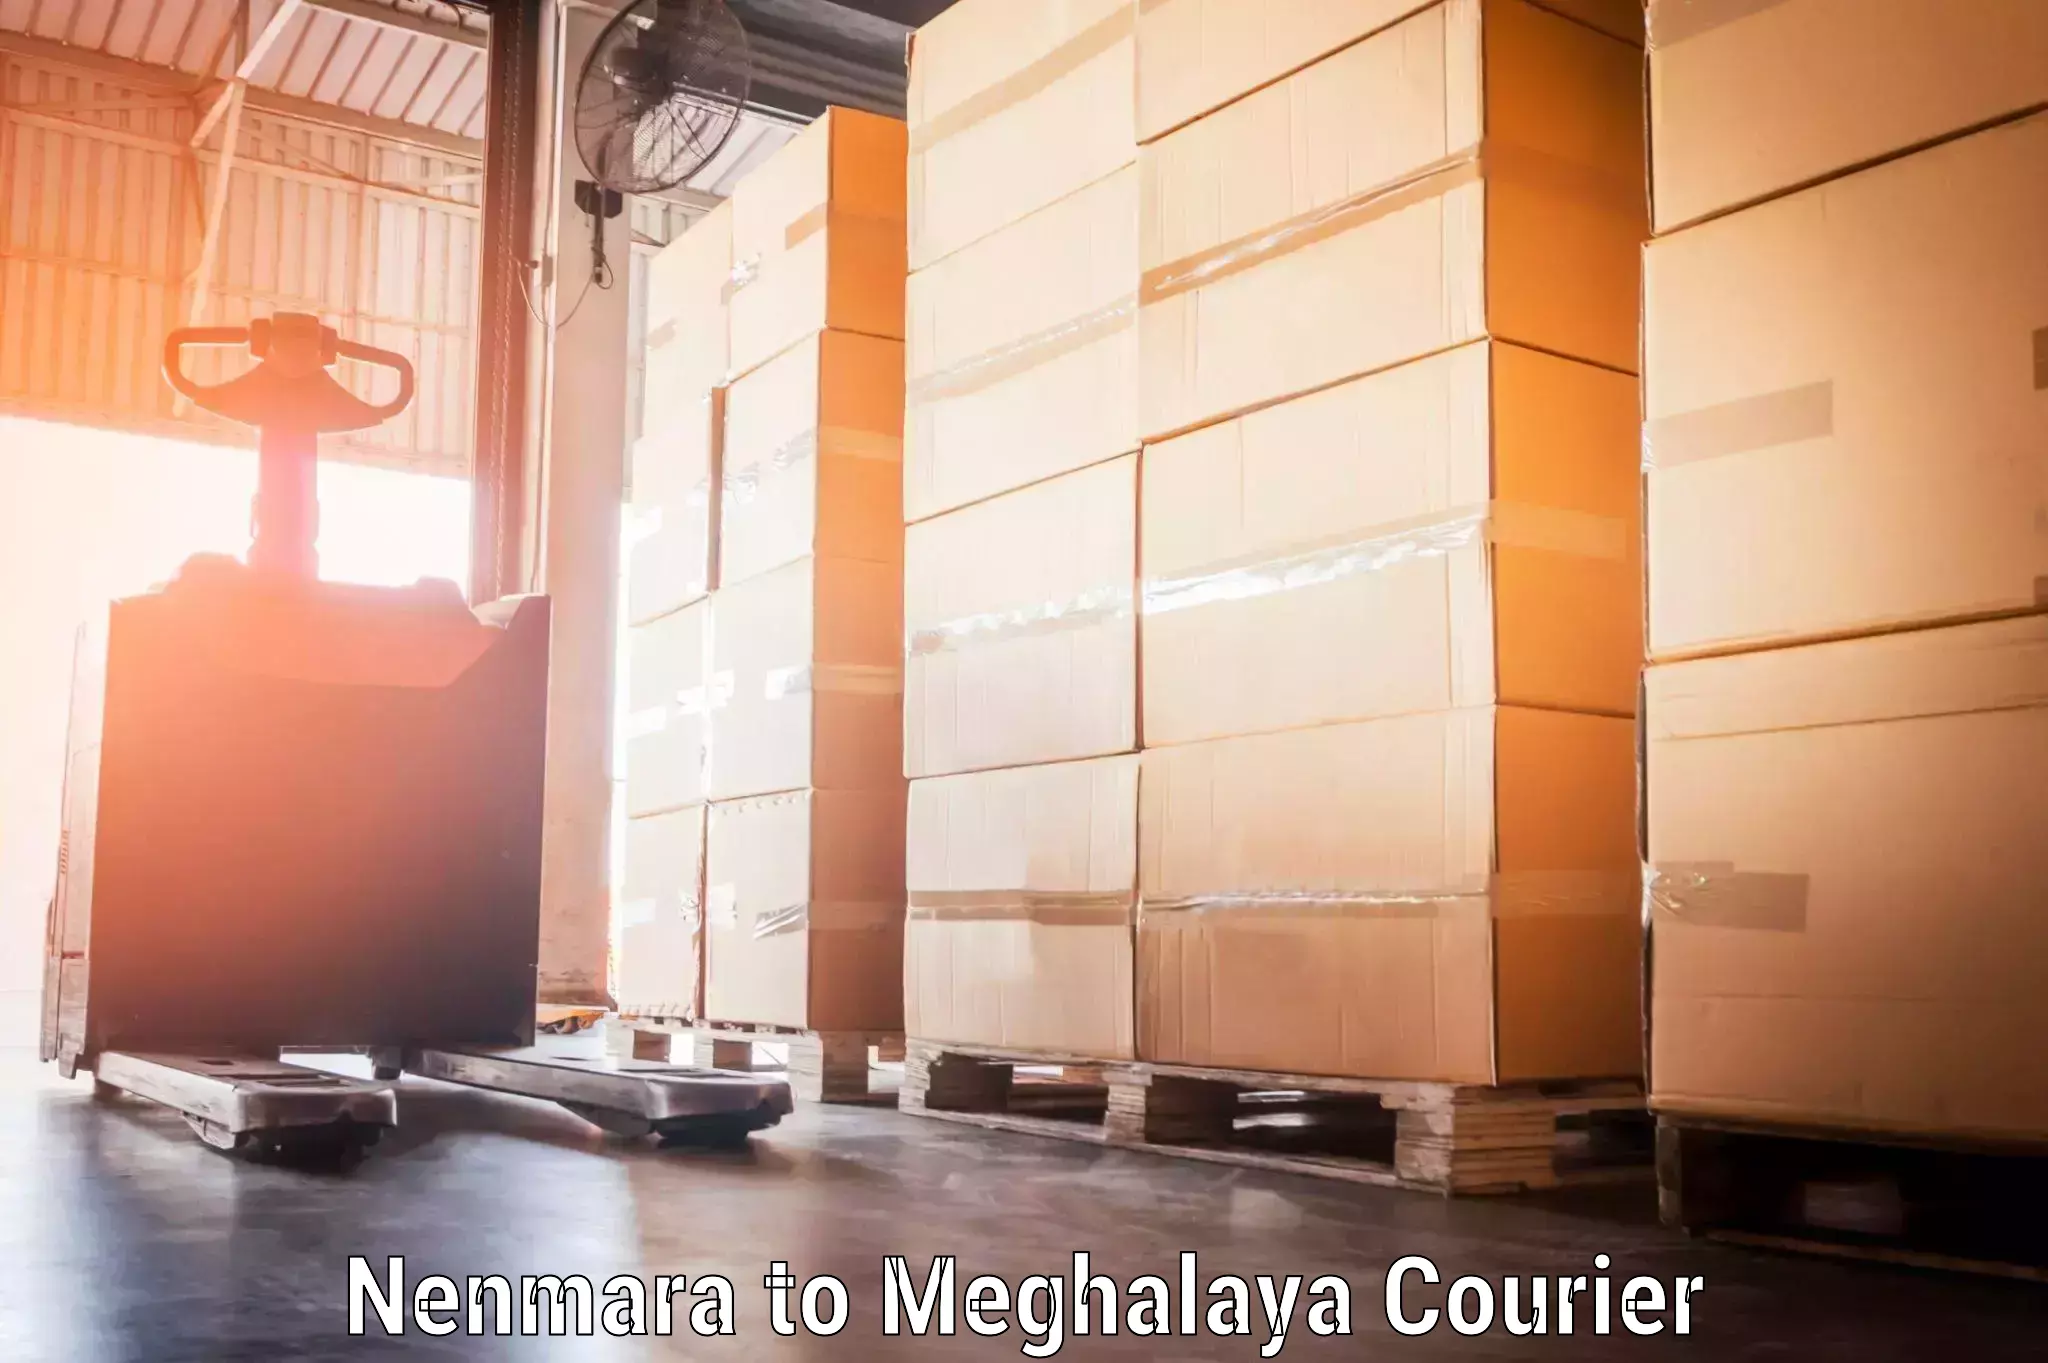 Personal effects shipping in Nenmara to Meghalaya